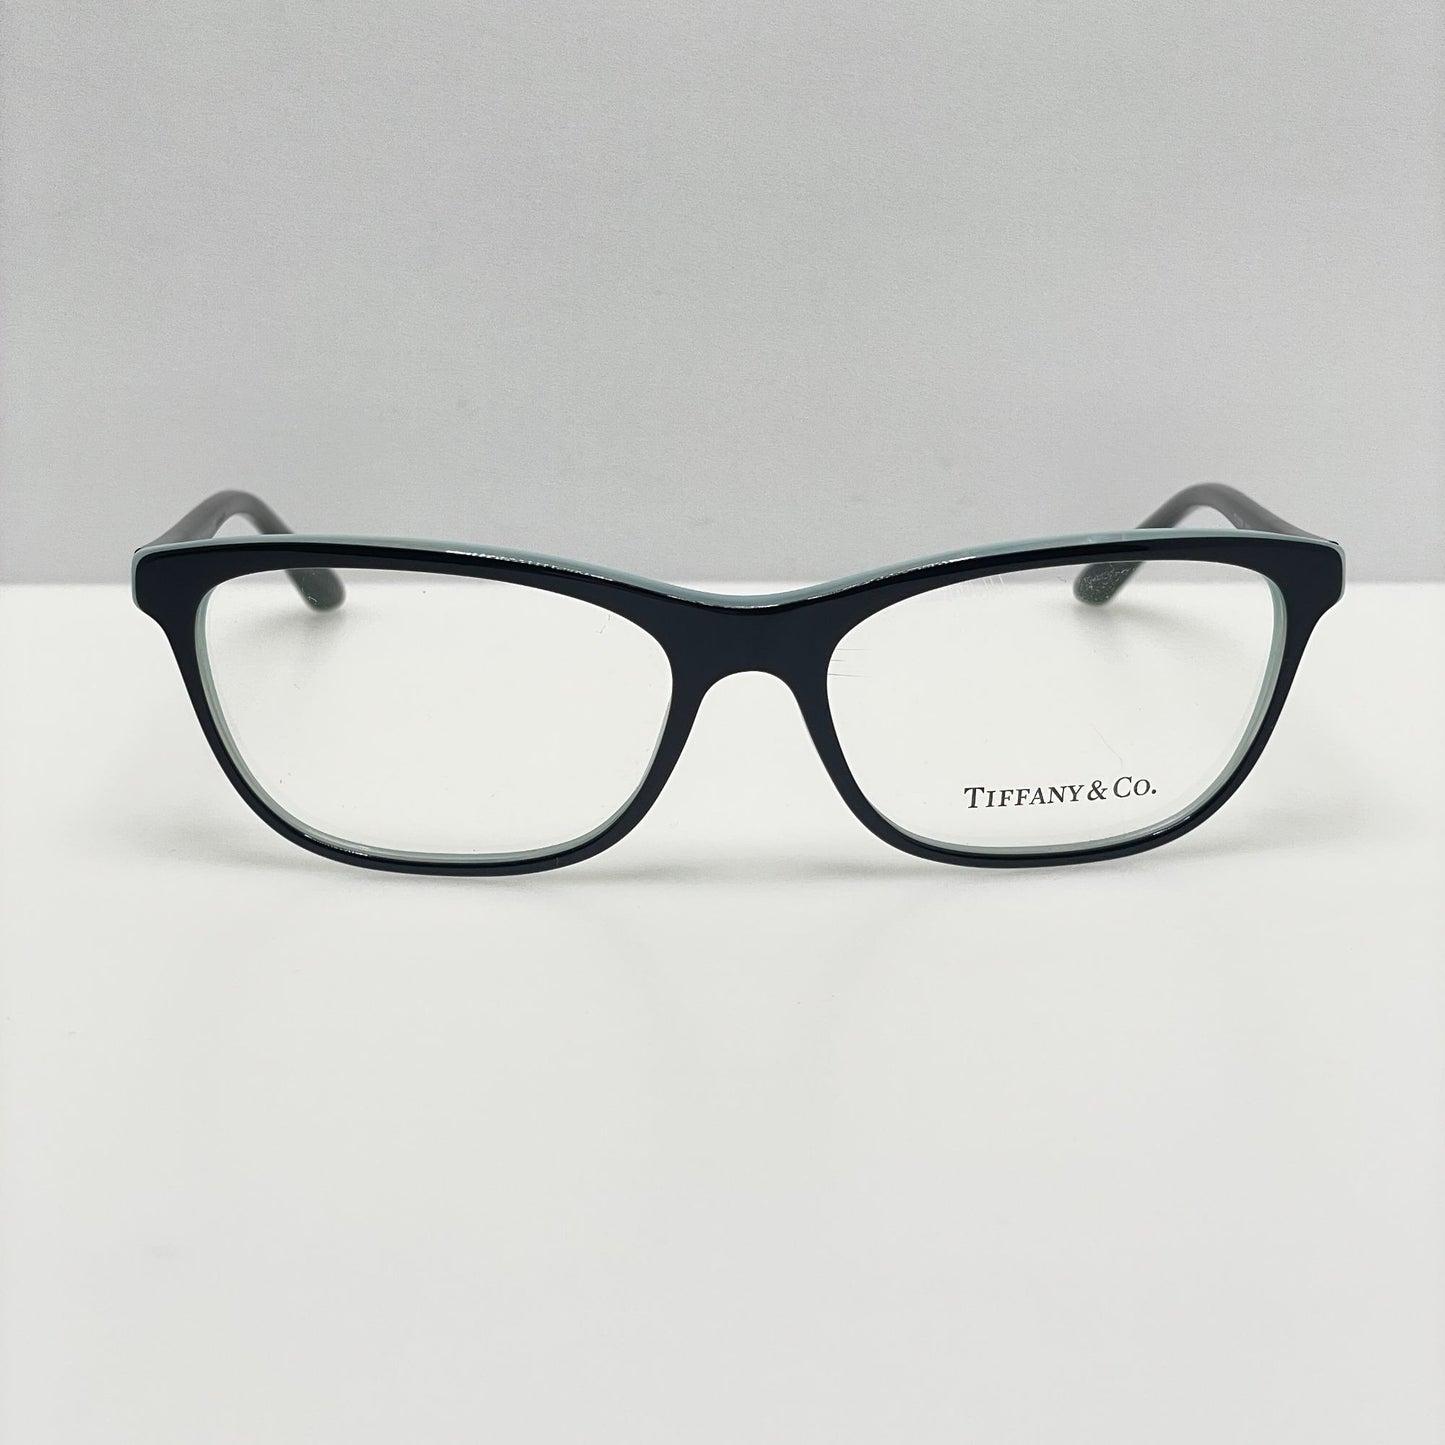 Tiffany & Co. Eyeglasses Eye Glasses Frames TF 2078 8163 55-16-140